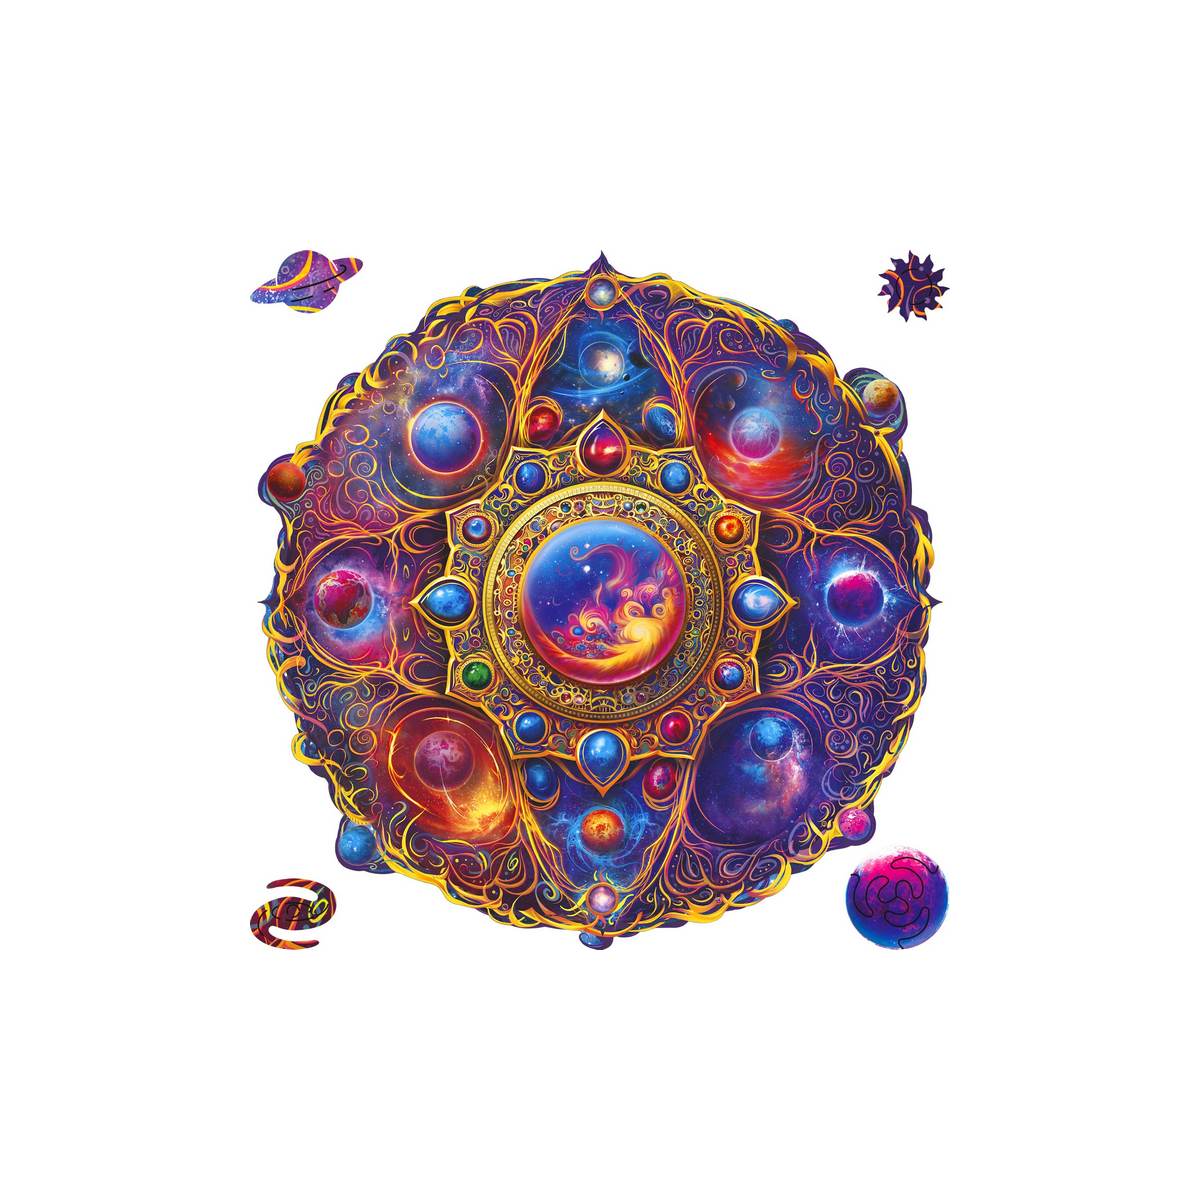 Unidragon Puzzle Mandala Space Dreams